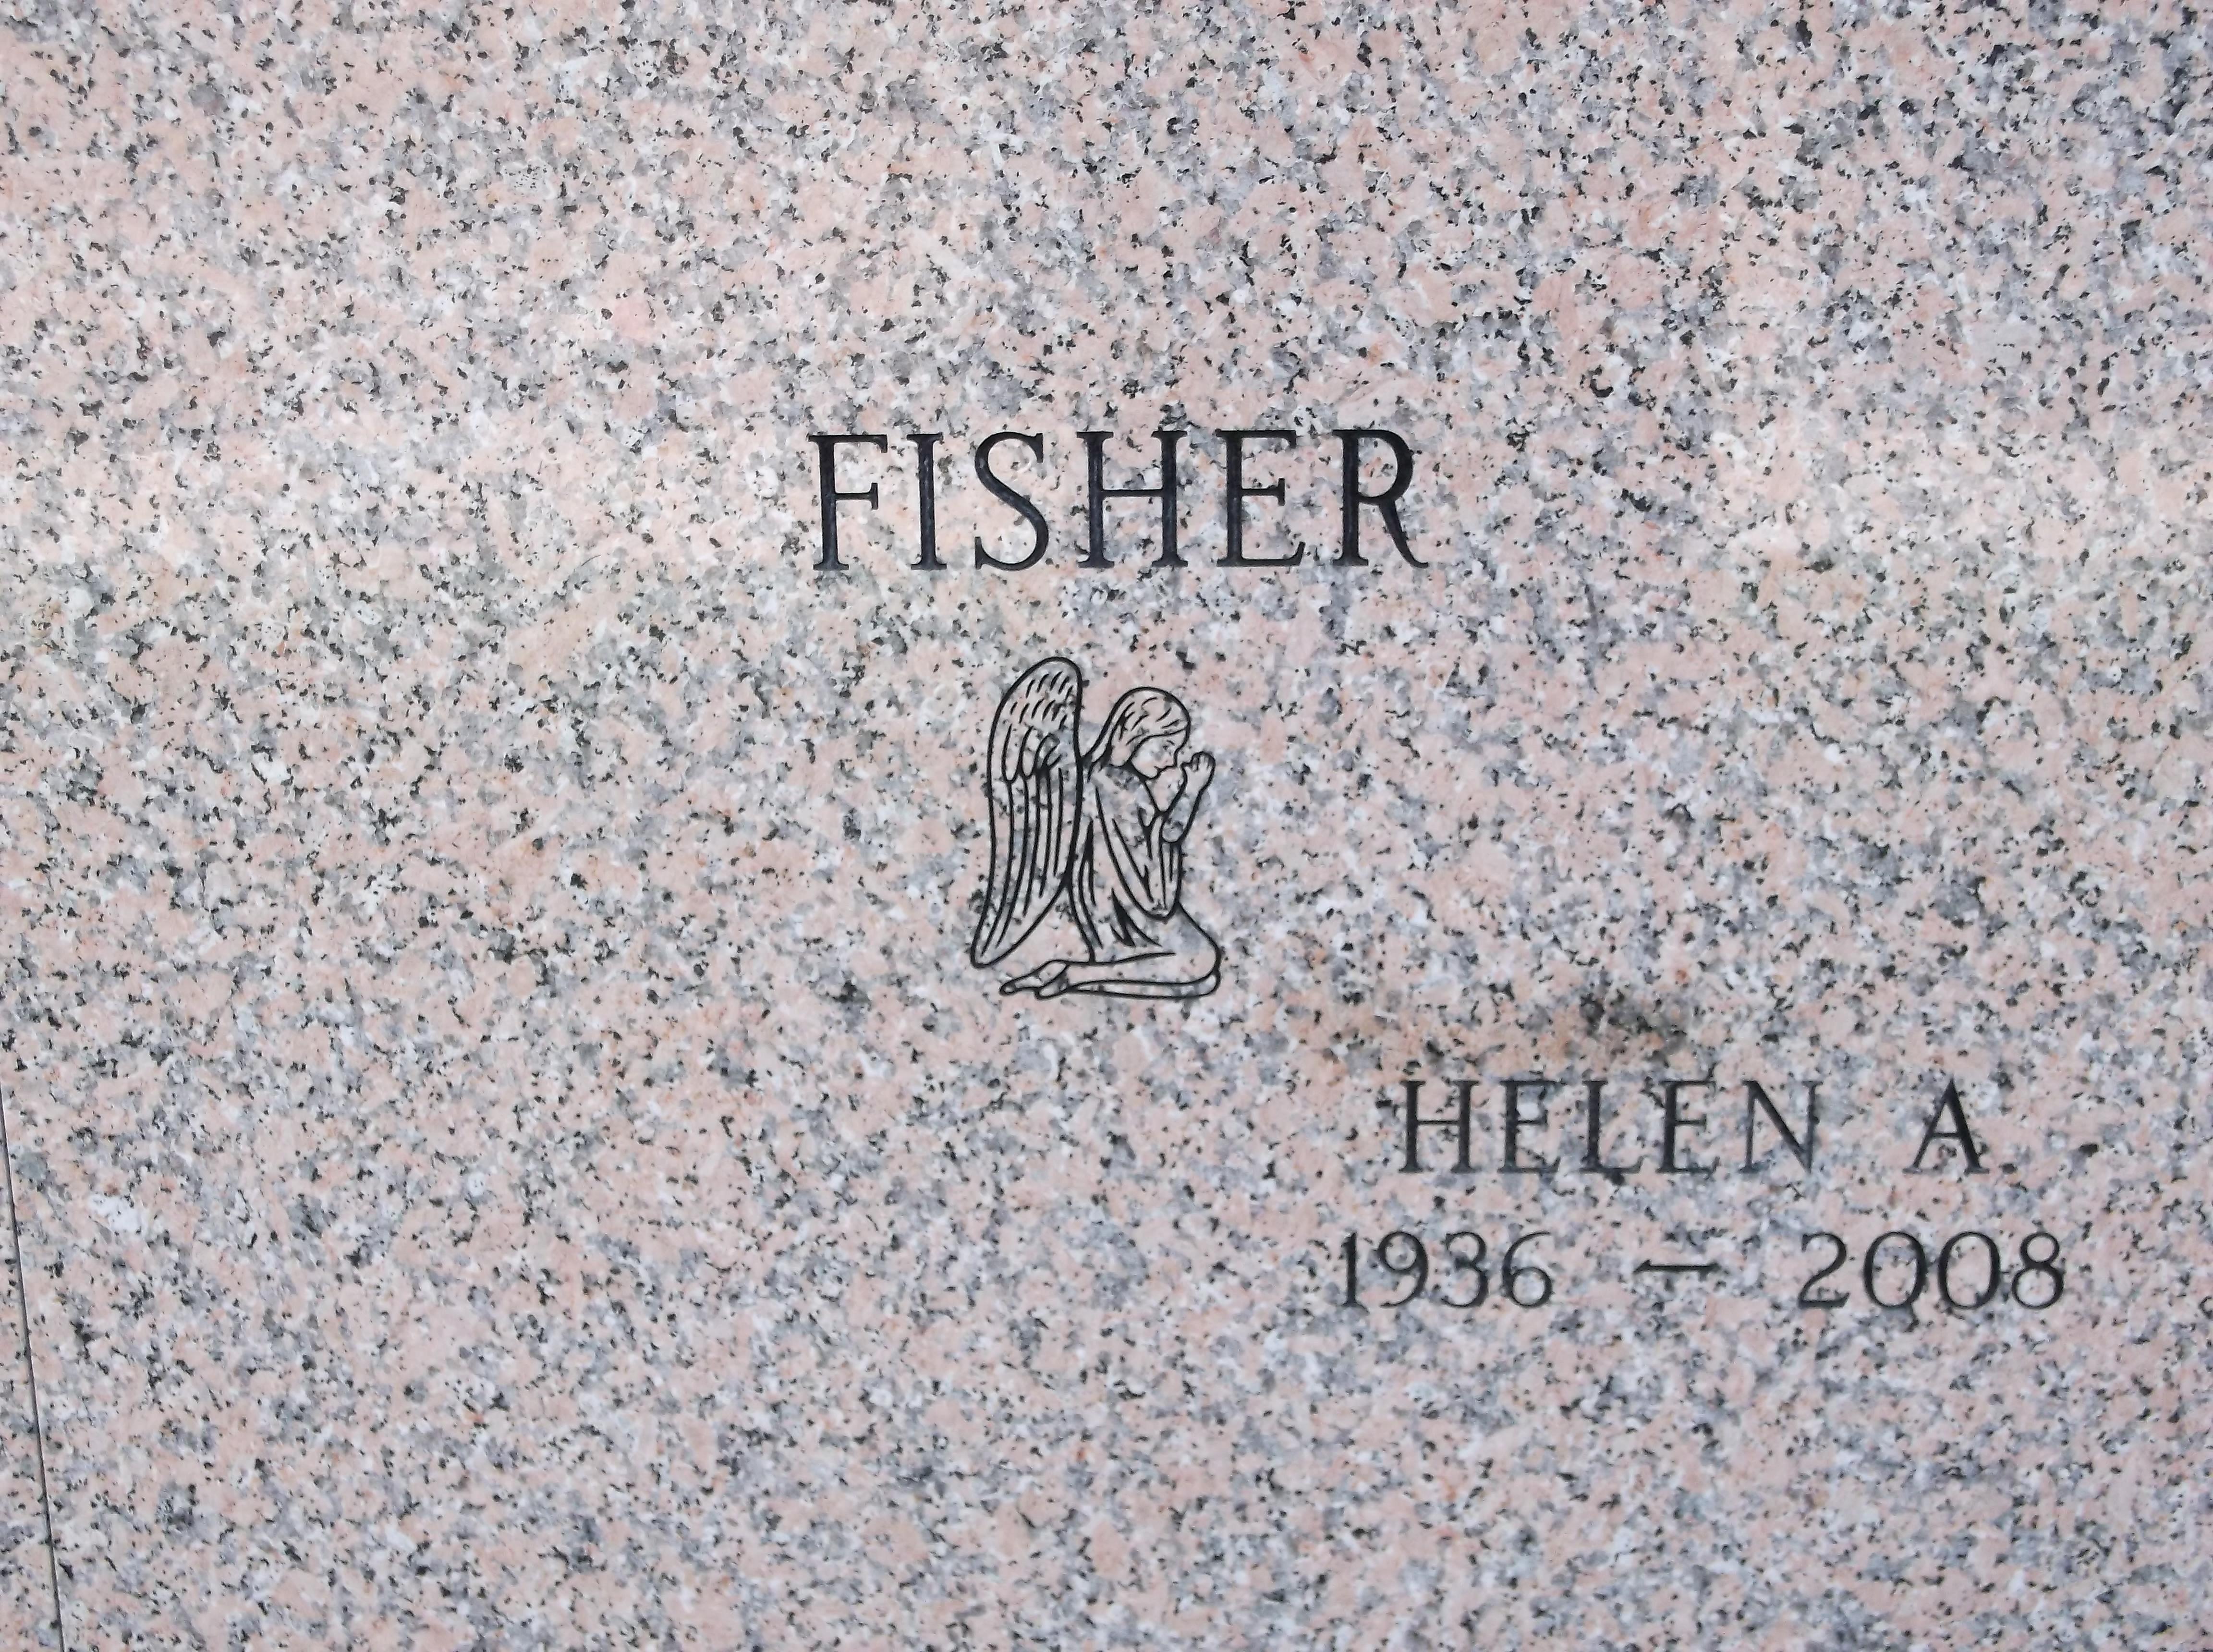 Helen A Fisher